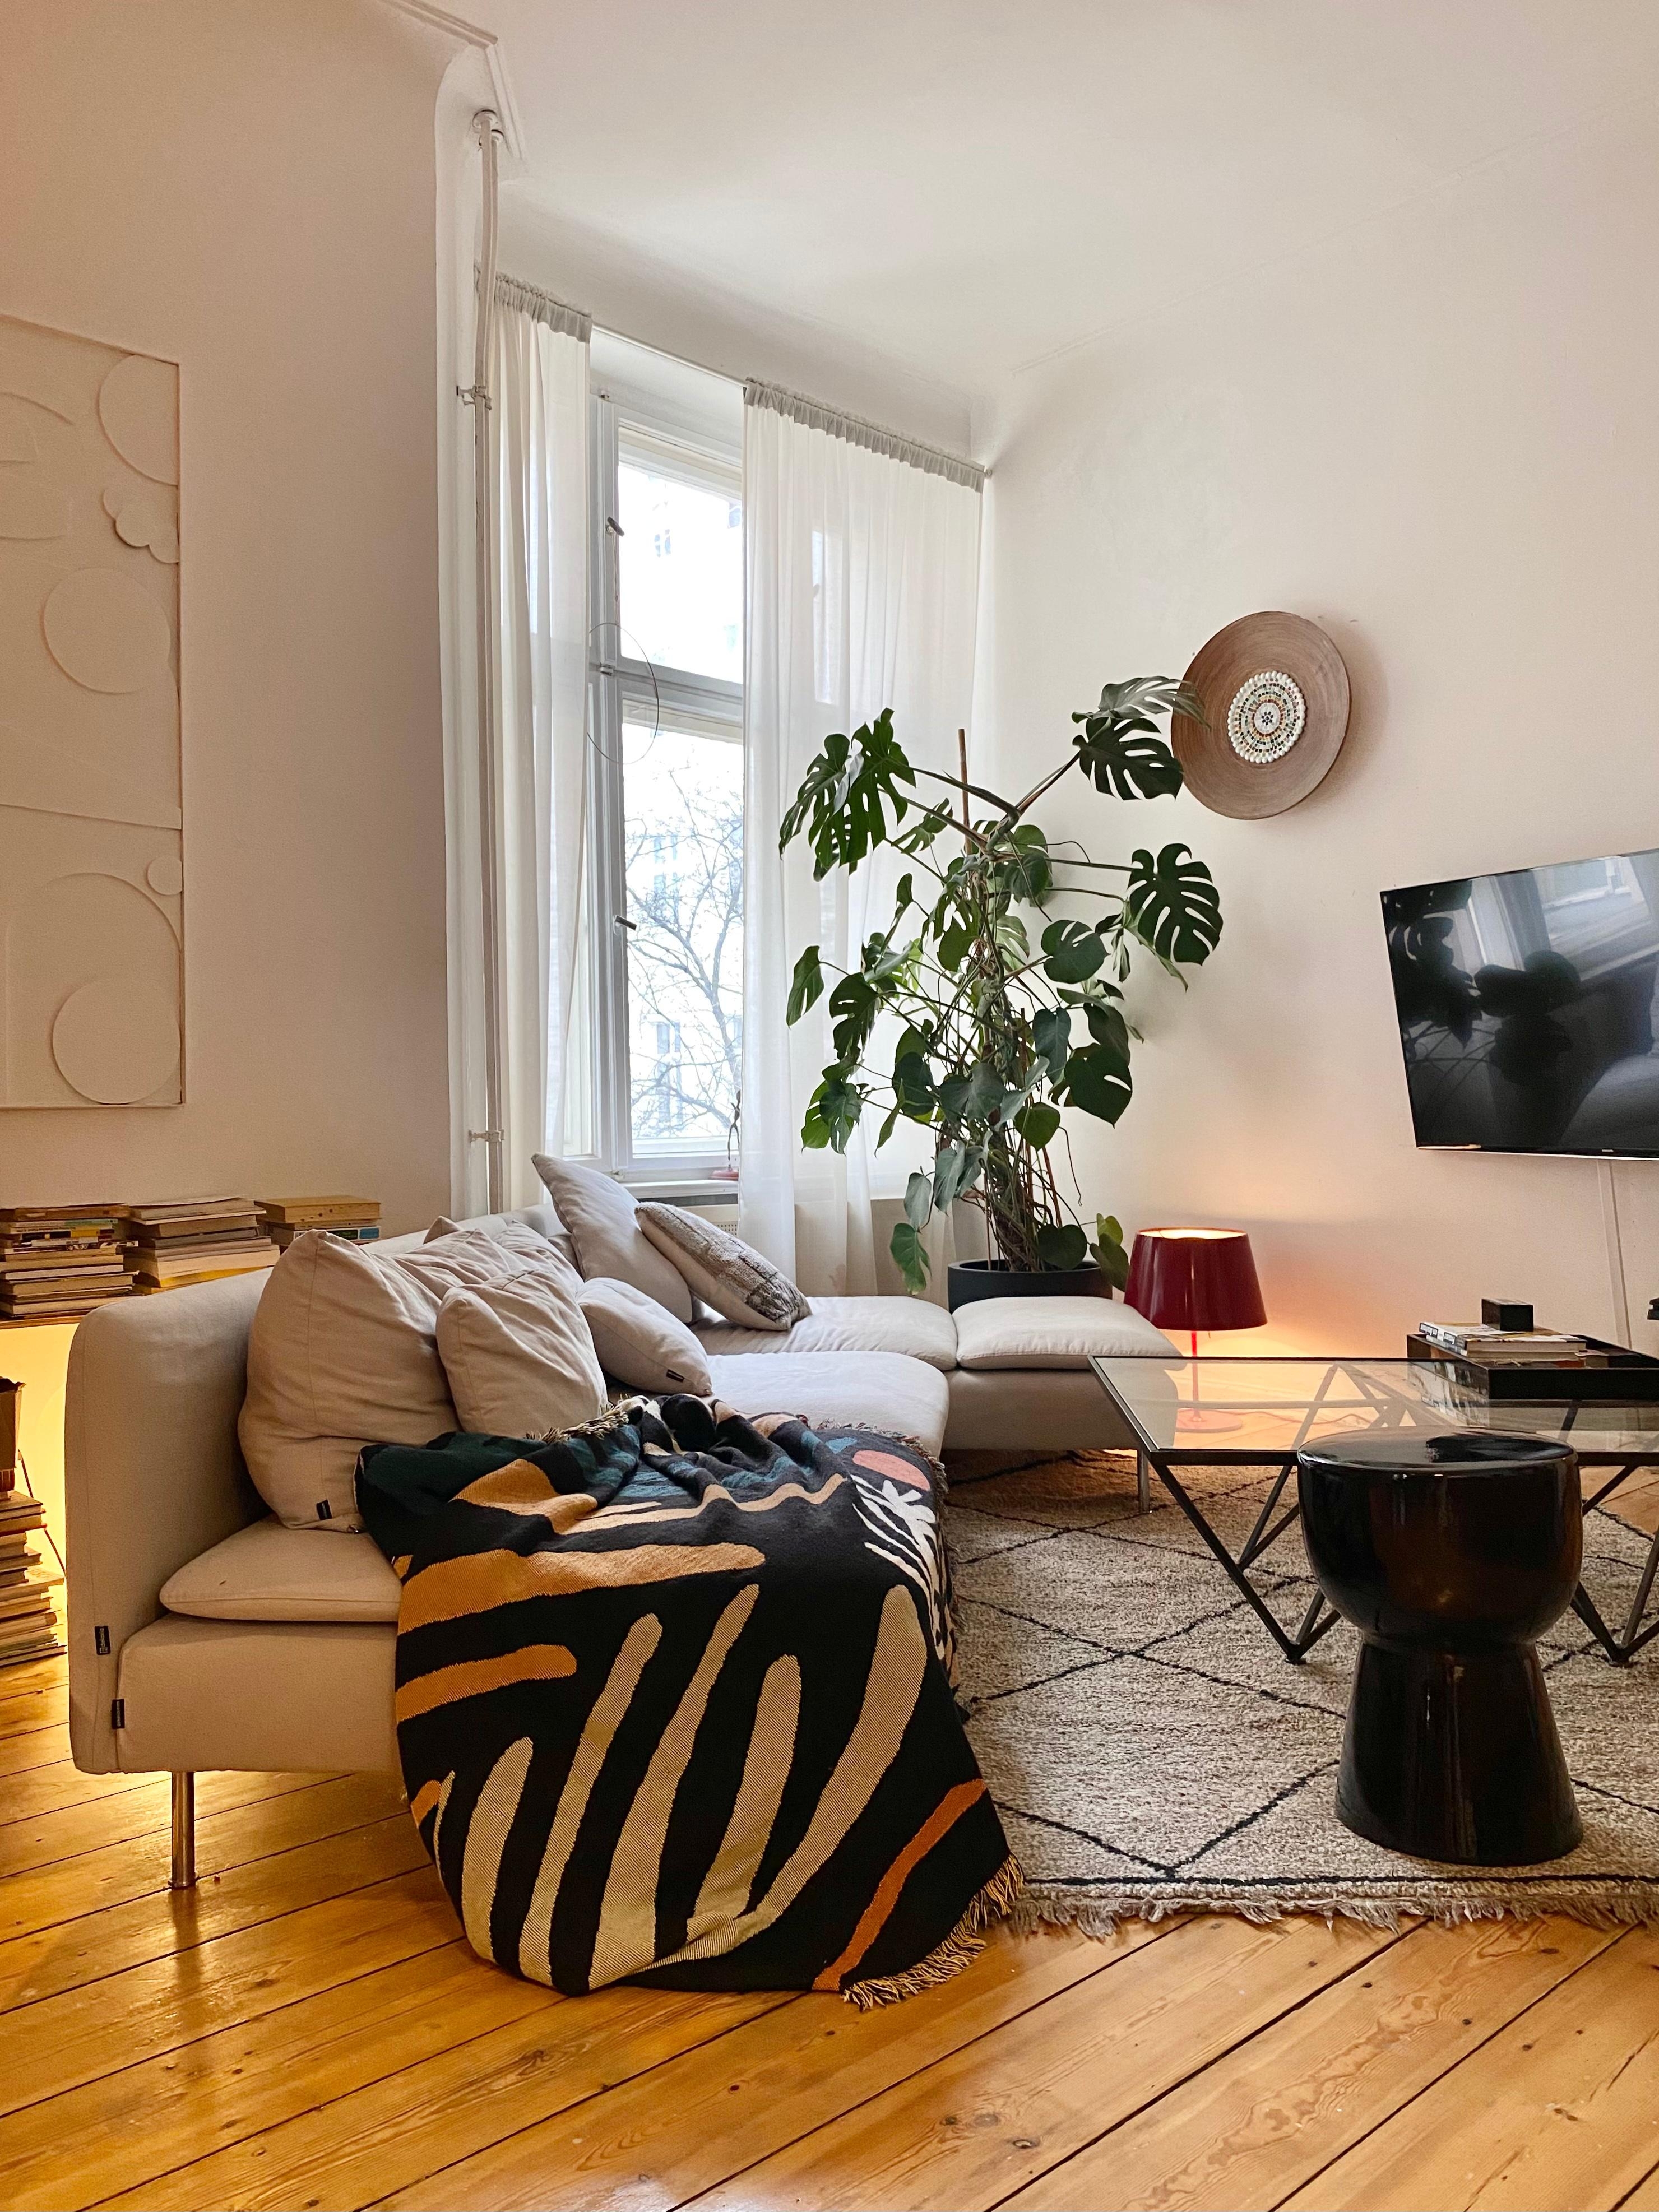 ♥️ #wohnzimmer #altbau #sofa #couch #teppich #beniourain #midcentury #holzboden